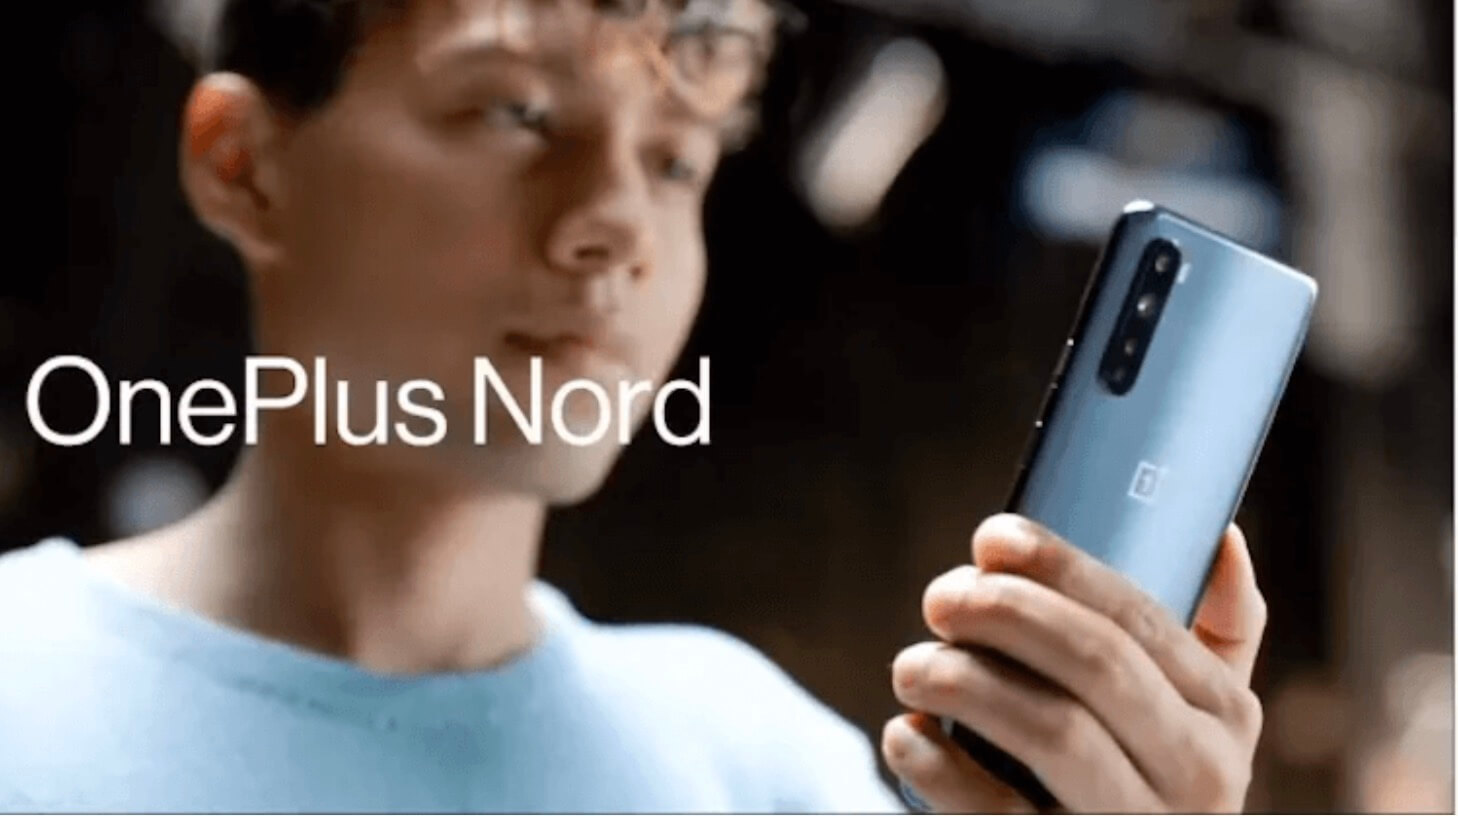 Новый OnePlus могут показать буквально на днях. Когда вышел OnePlus Nord он заинтересовал многих. Фото.